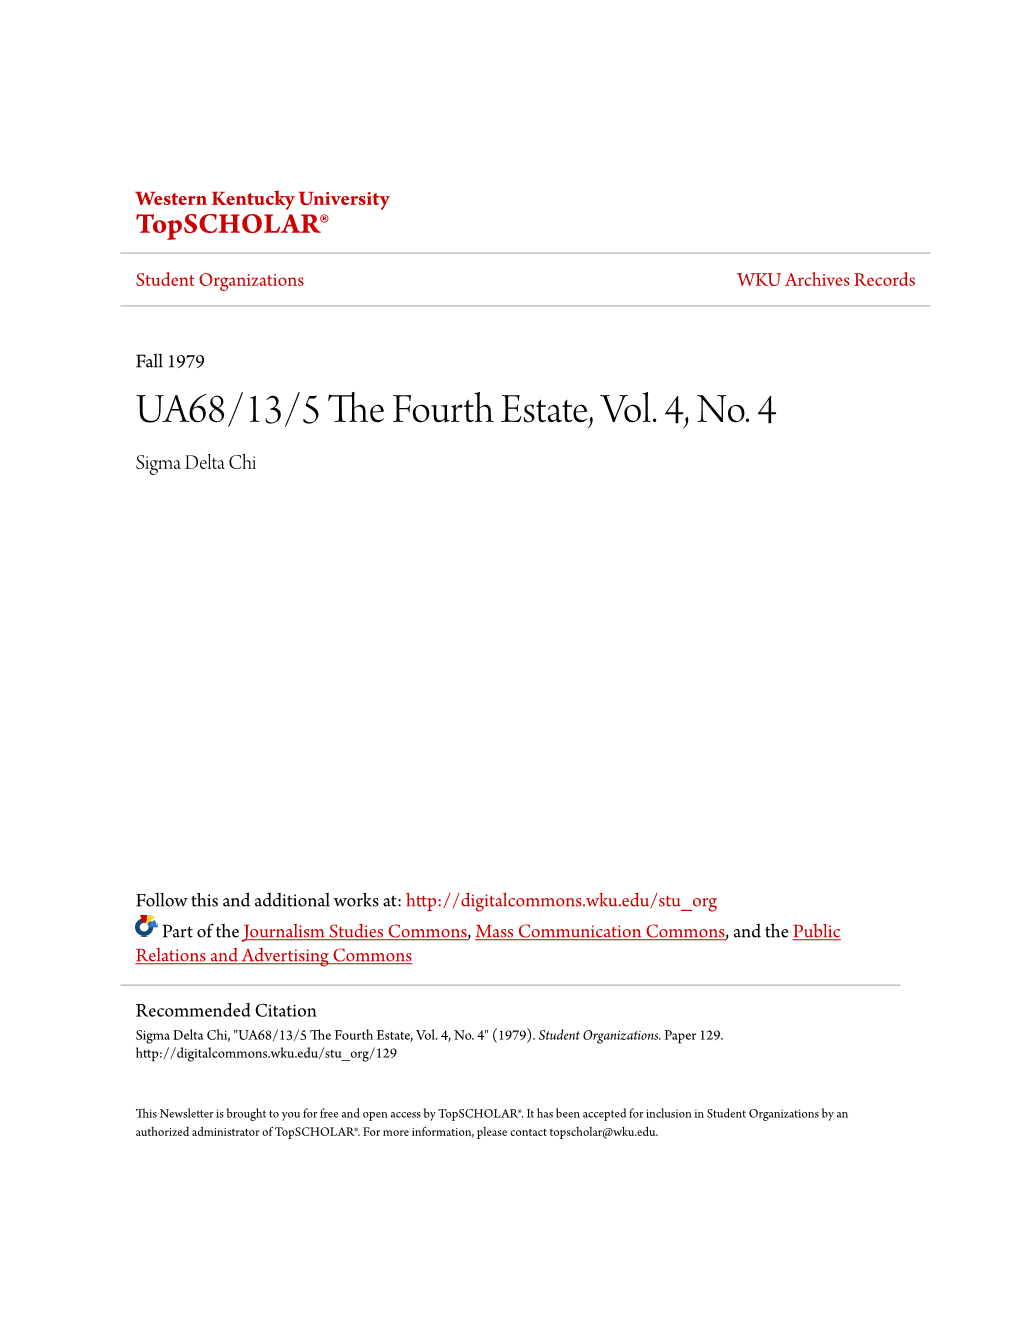 UA68/13/5 the Fourth Estate, Vol. 4, No. 4